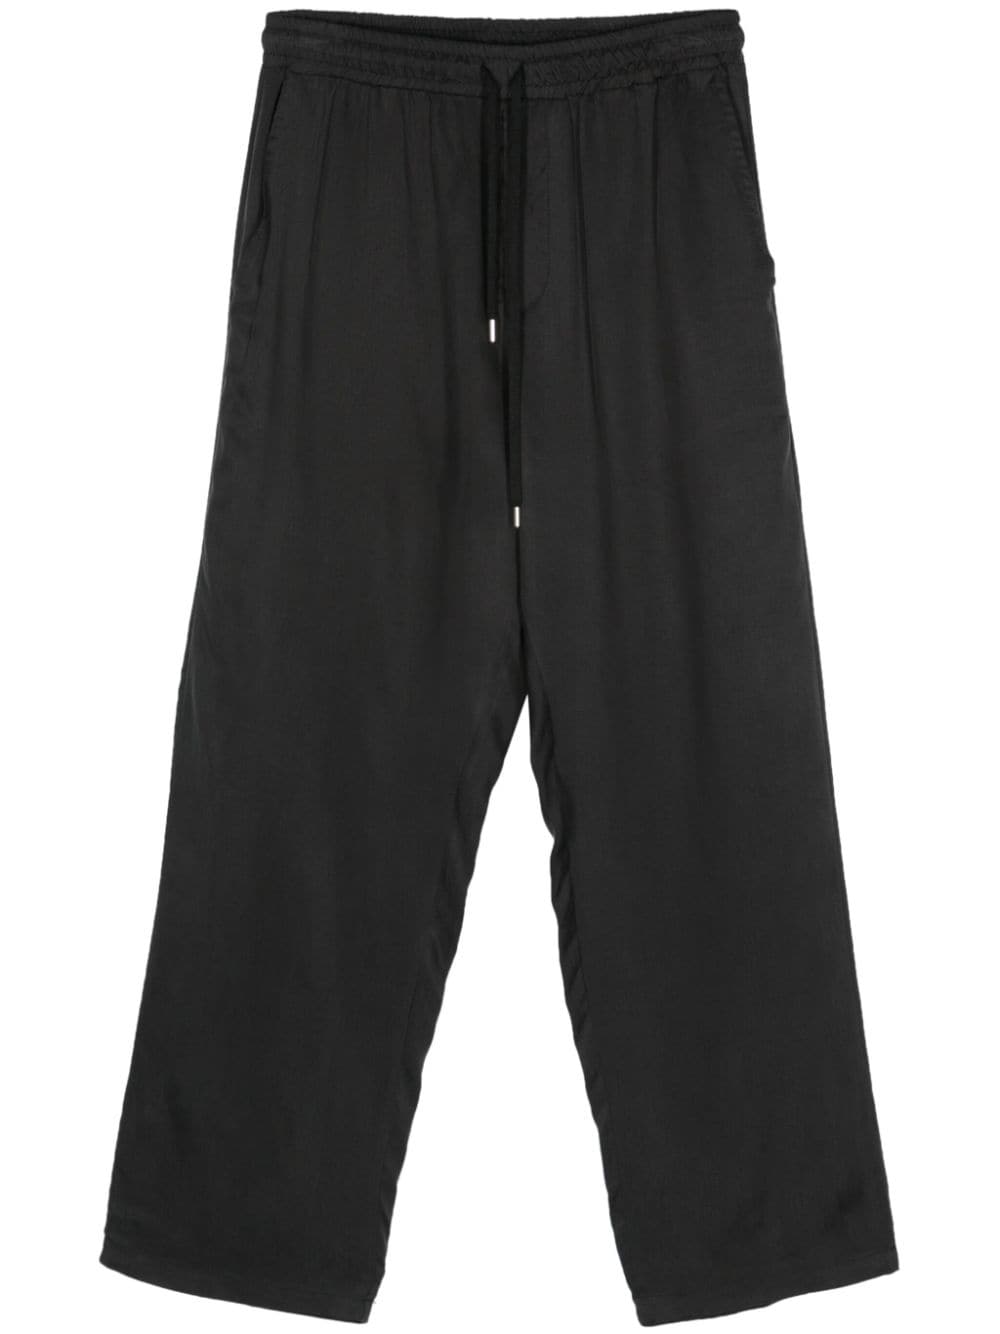 Costumein Pajama 缎面直筒长裤 In Black